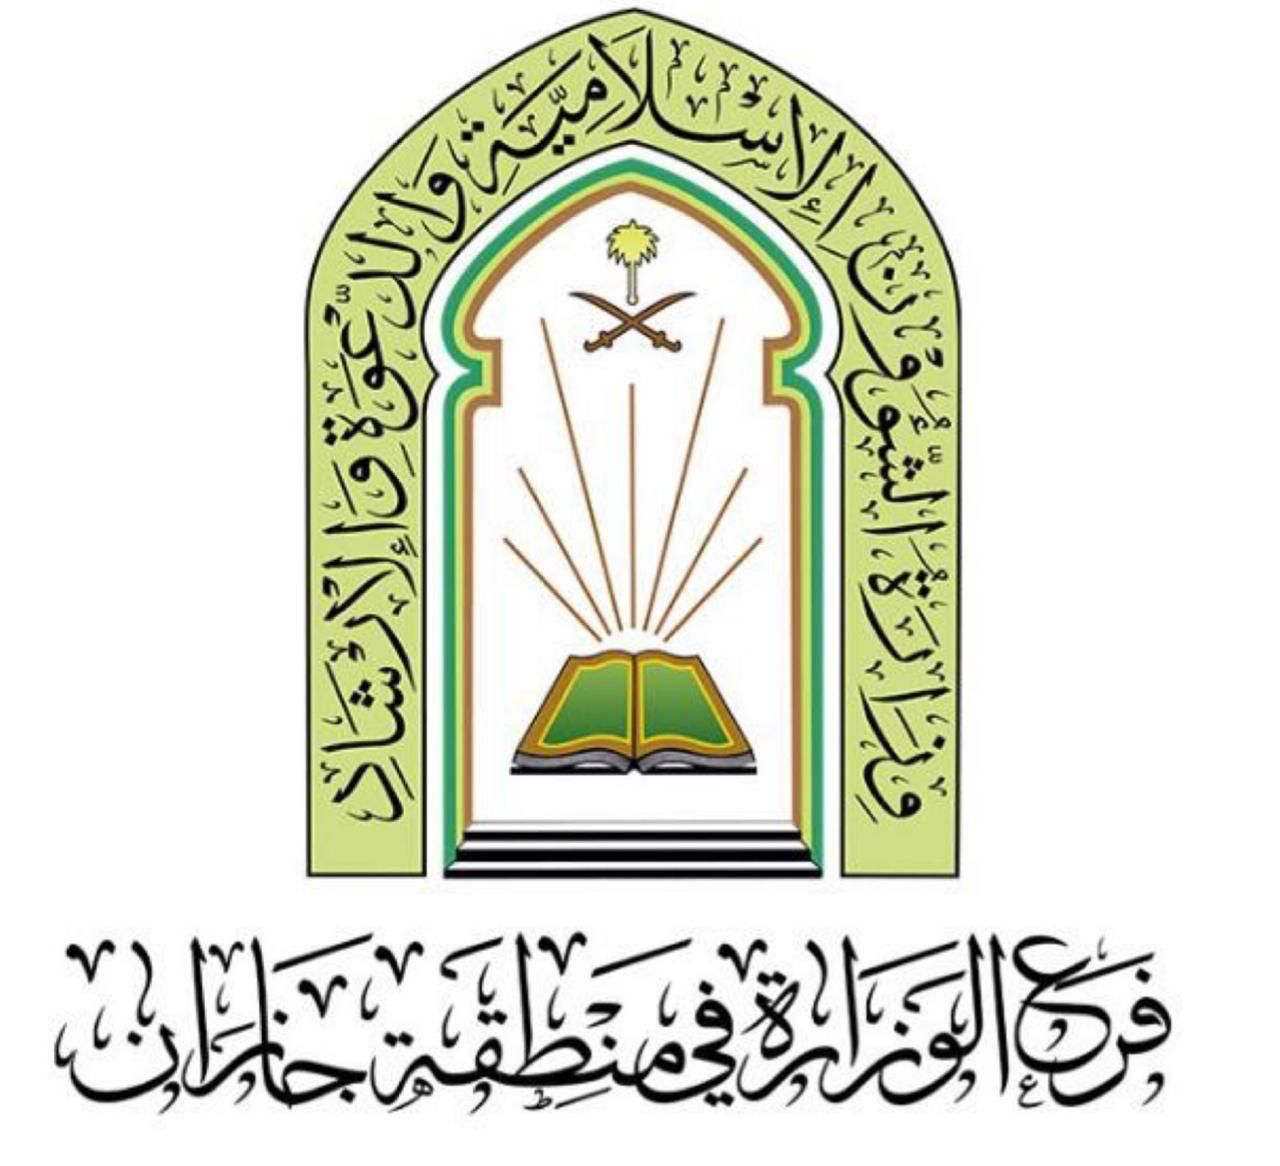 ٢٢ منشطا دعويا تنفذه اسلامية جازان في محافظة الطوال